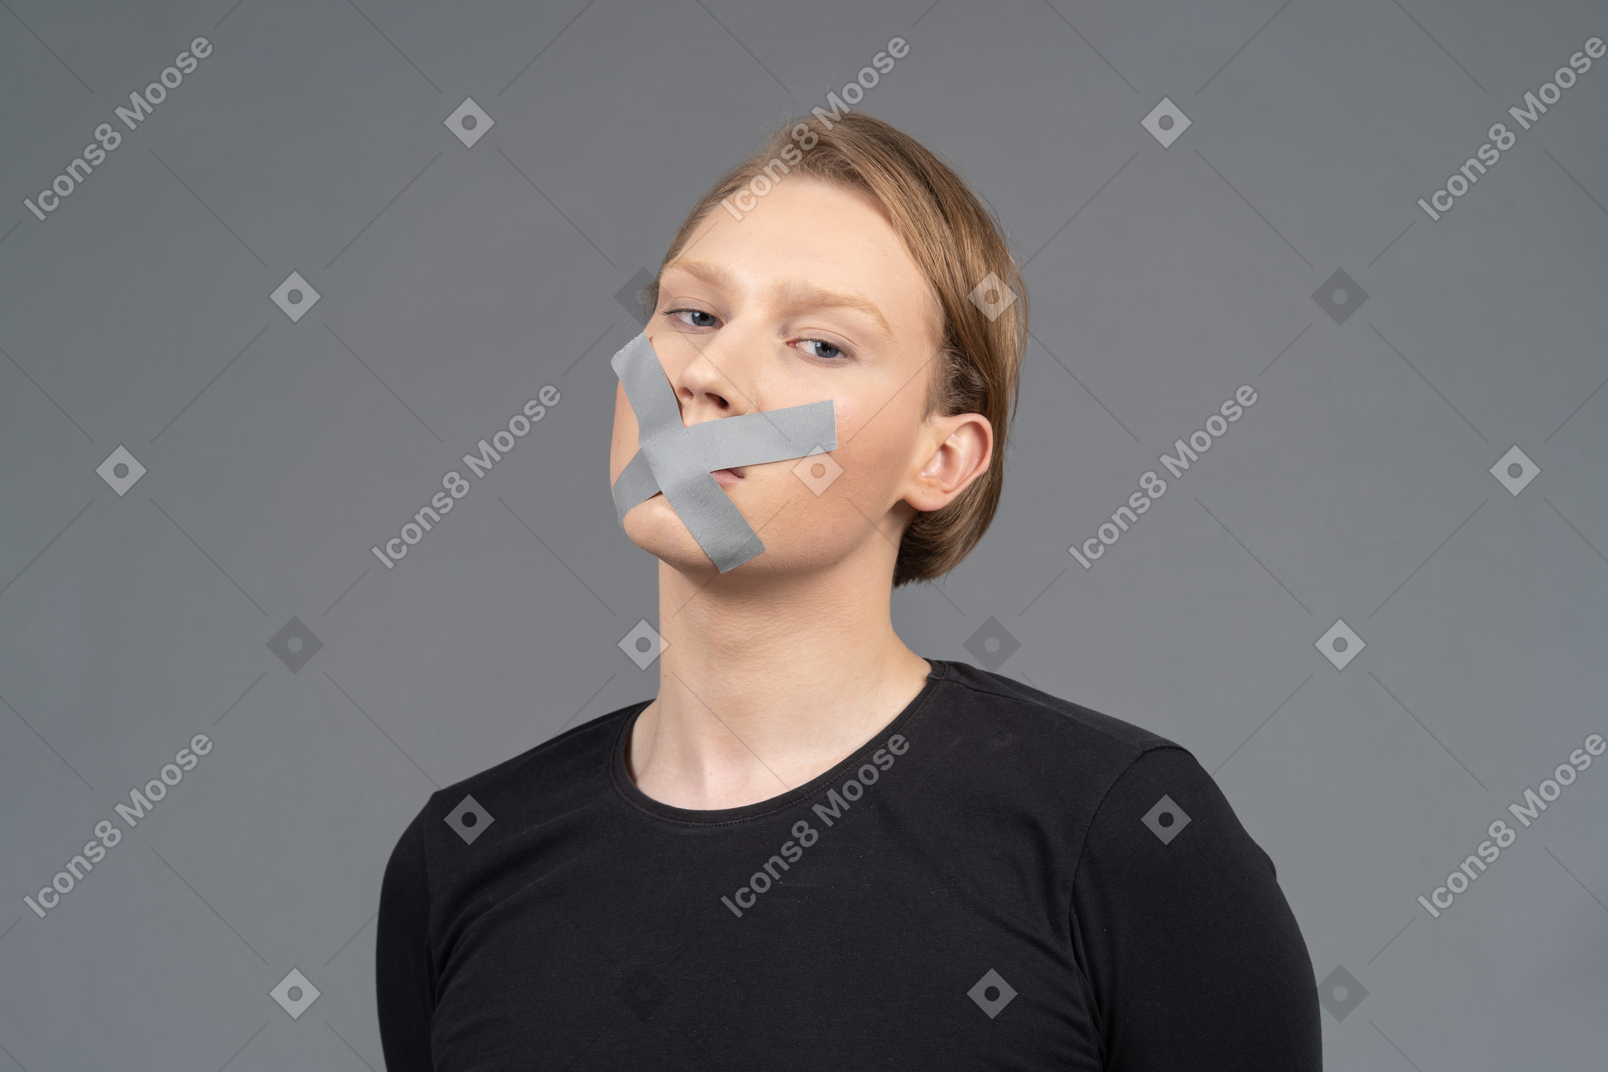 Dreiviertelansicht der person mit klebeband am mund